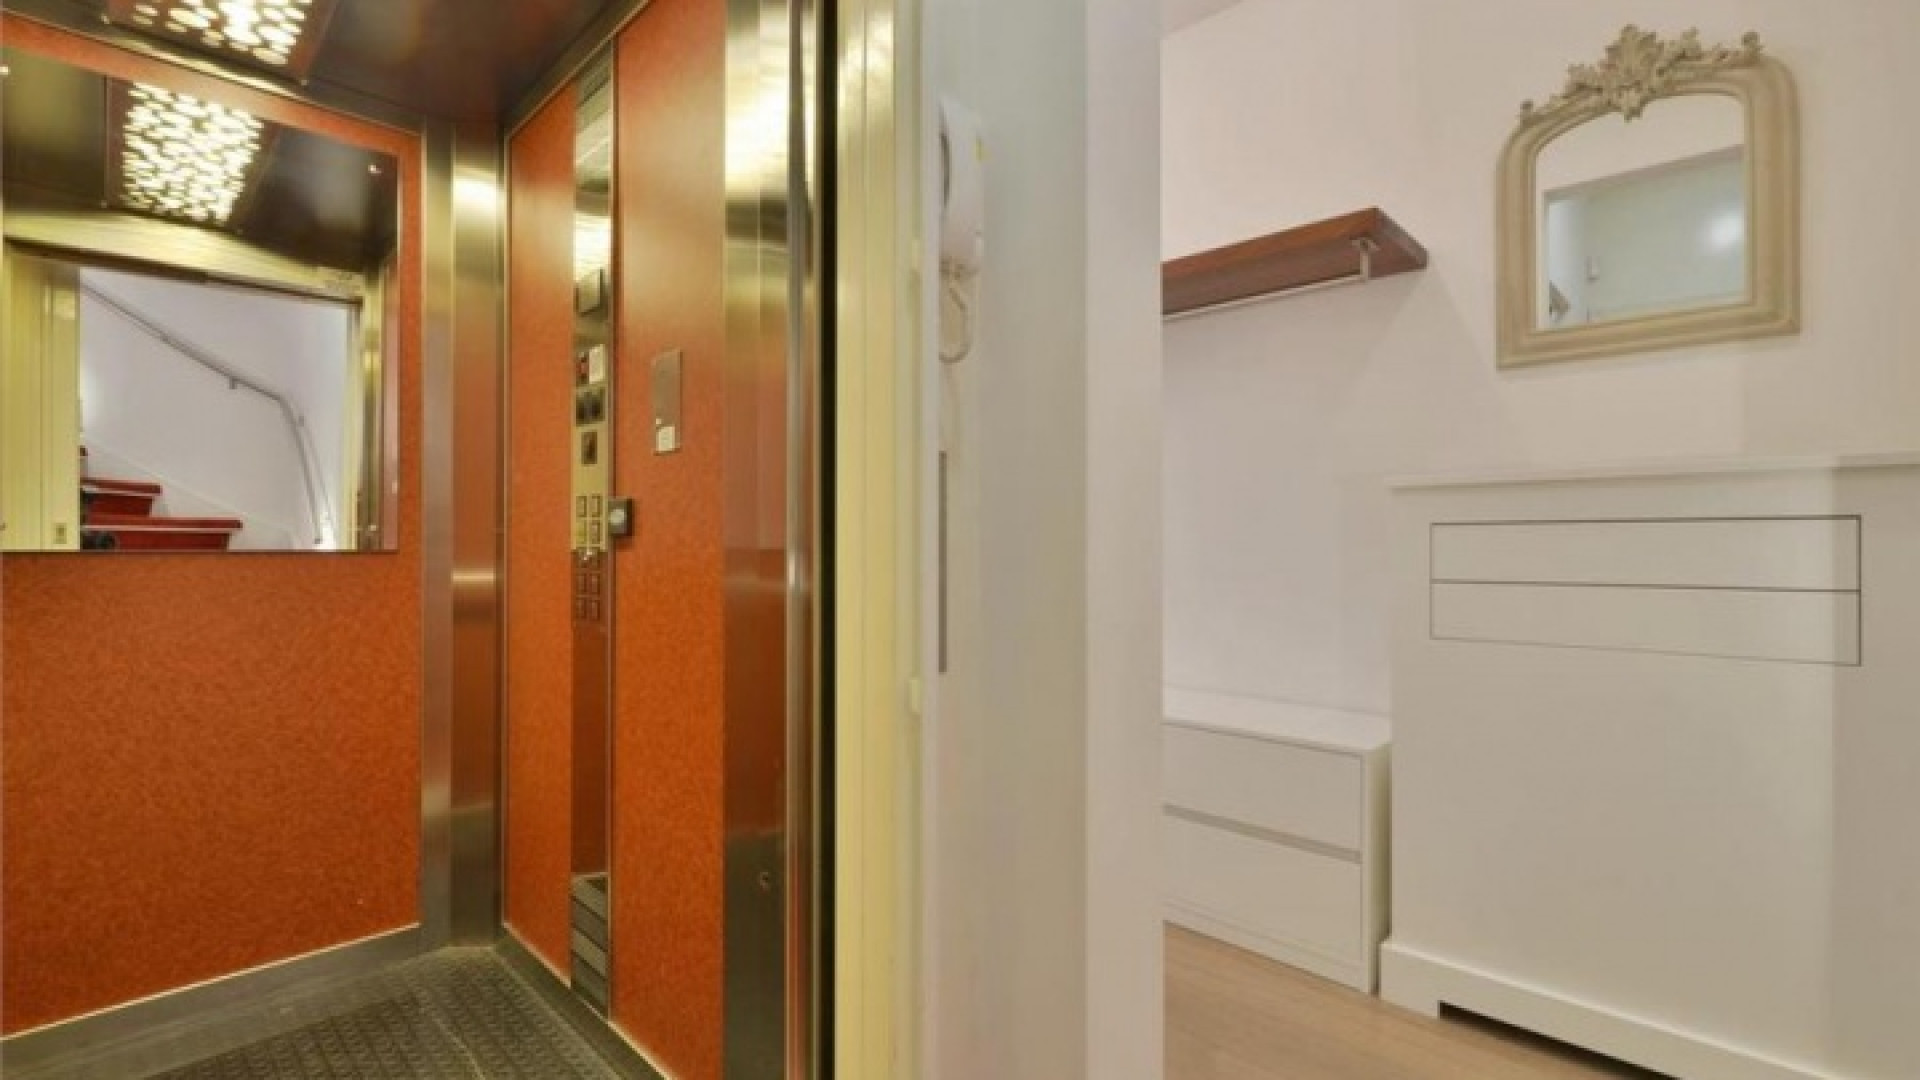 Frank Rijkaard zoekt huurder voor zijn luxe dubbele bovenhuis. Zie foto's 4